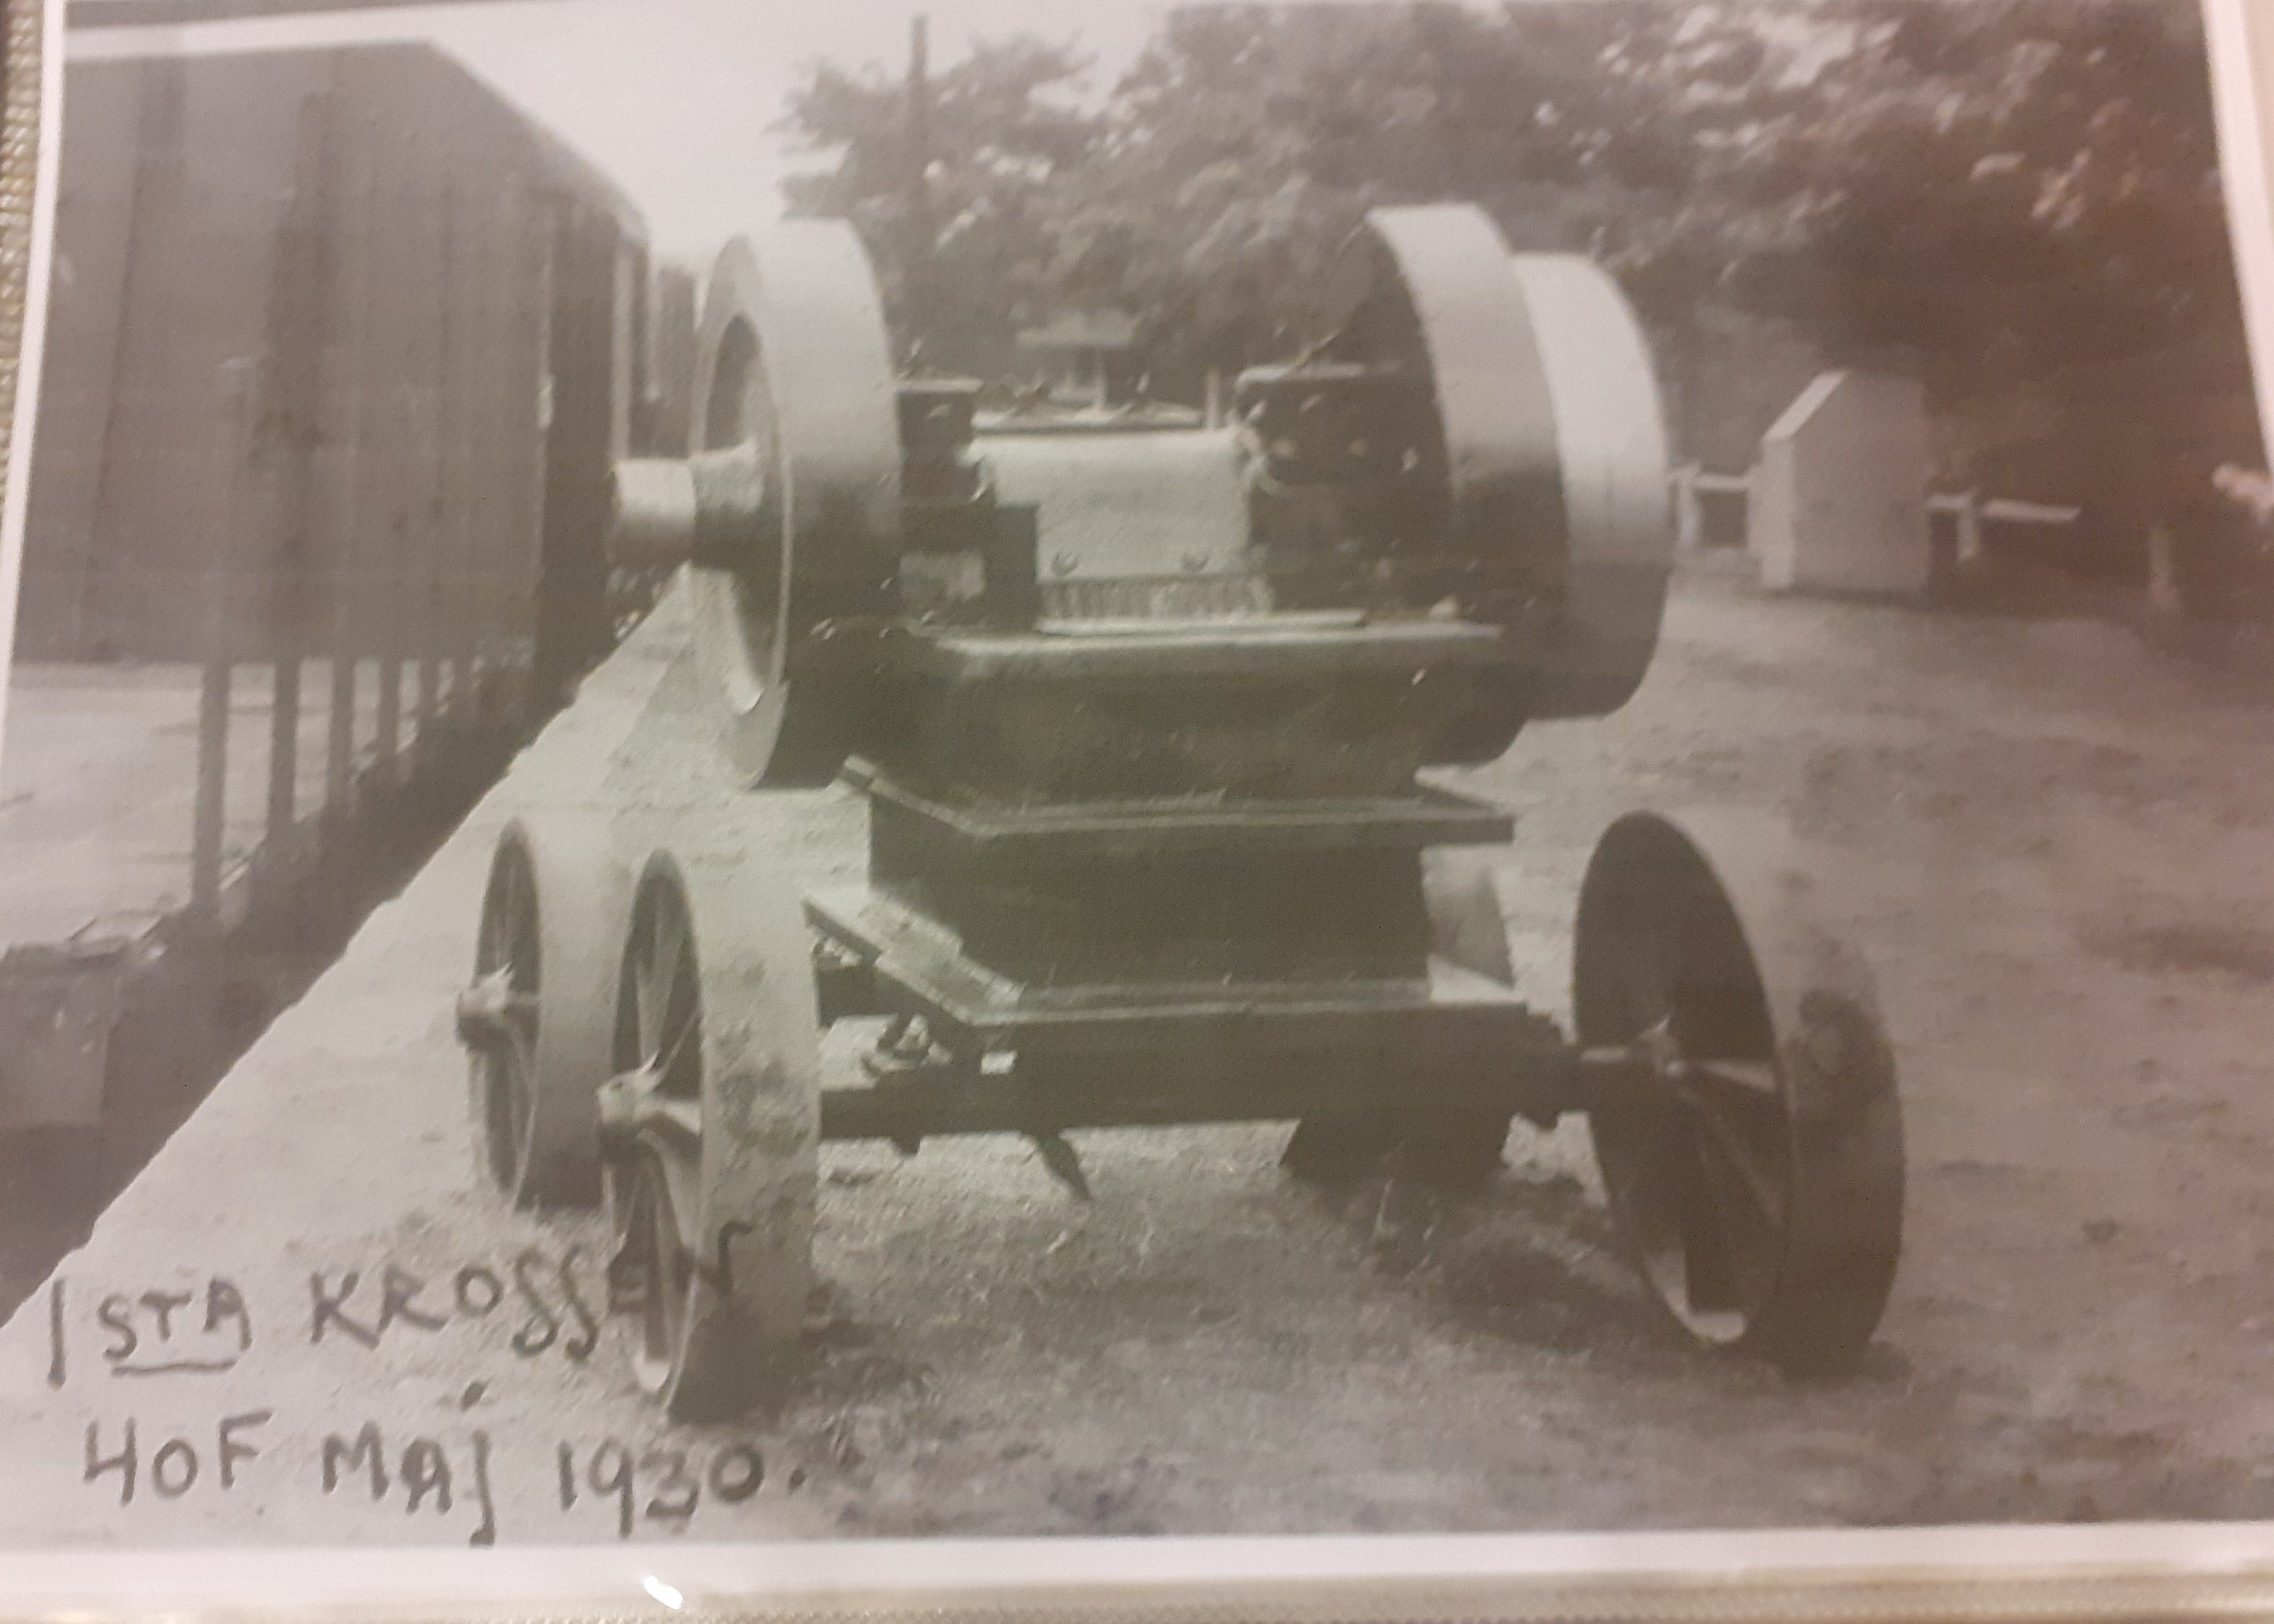 Första gruskrossen tillverkad vid Arbrå verkstad 1930